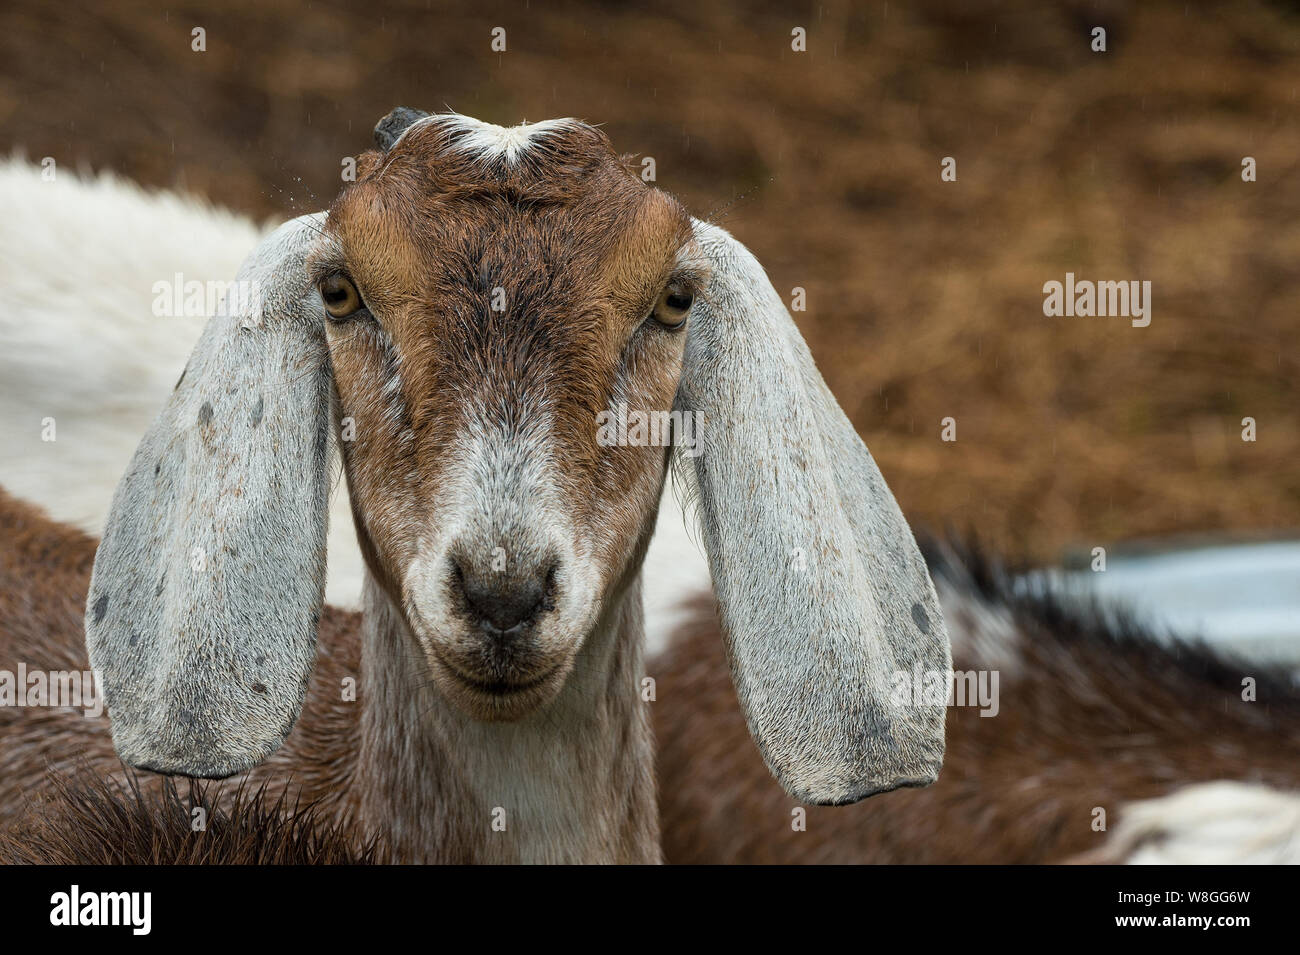 Un an de chèvre Nubian africains regardant la caméra. C'est longues oreilles distinctives sont une adaptation de refroidissement pour les environnements chauds et secs. Banque D'Images